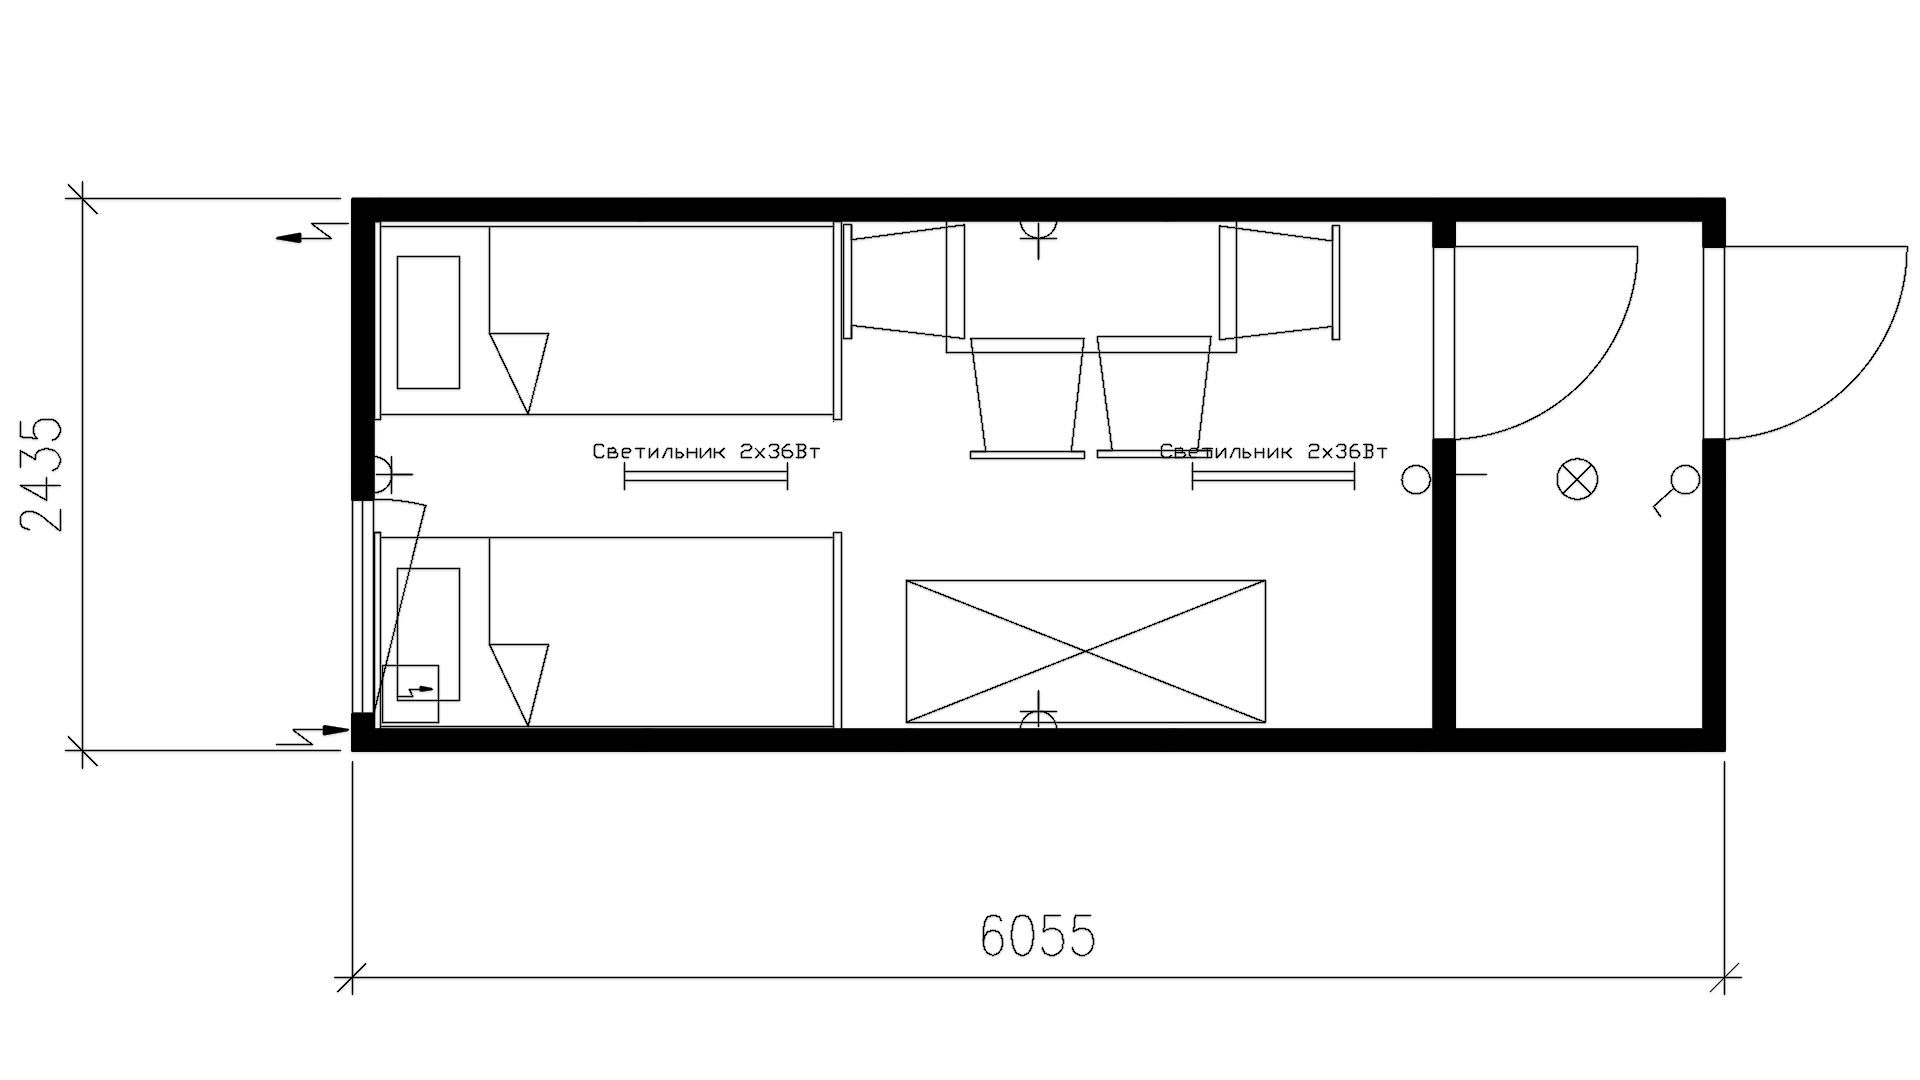 Планировка жилого контейнера с тамбуром (1 окно, 1 вн.дверь, 1 нар.дверь) 20-футов, размеры: 6055/2435/2750 (Д/Ш/В) мм